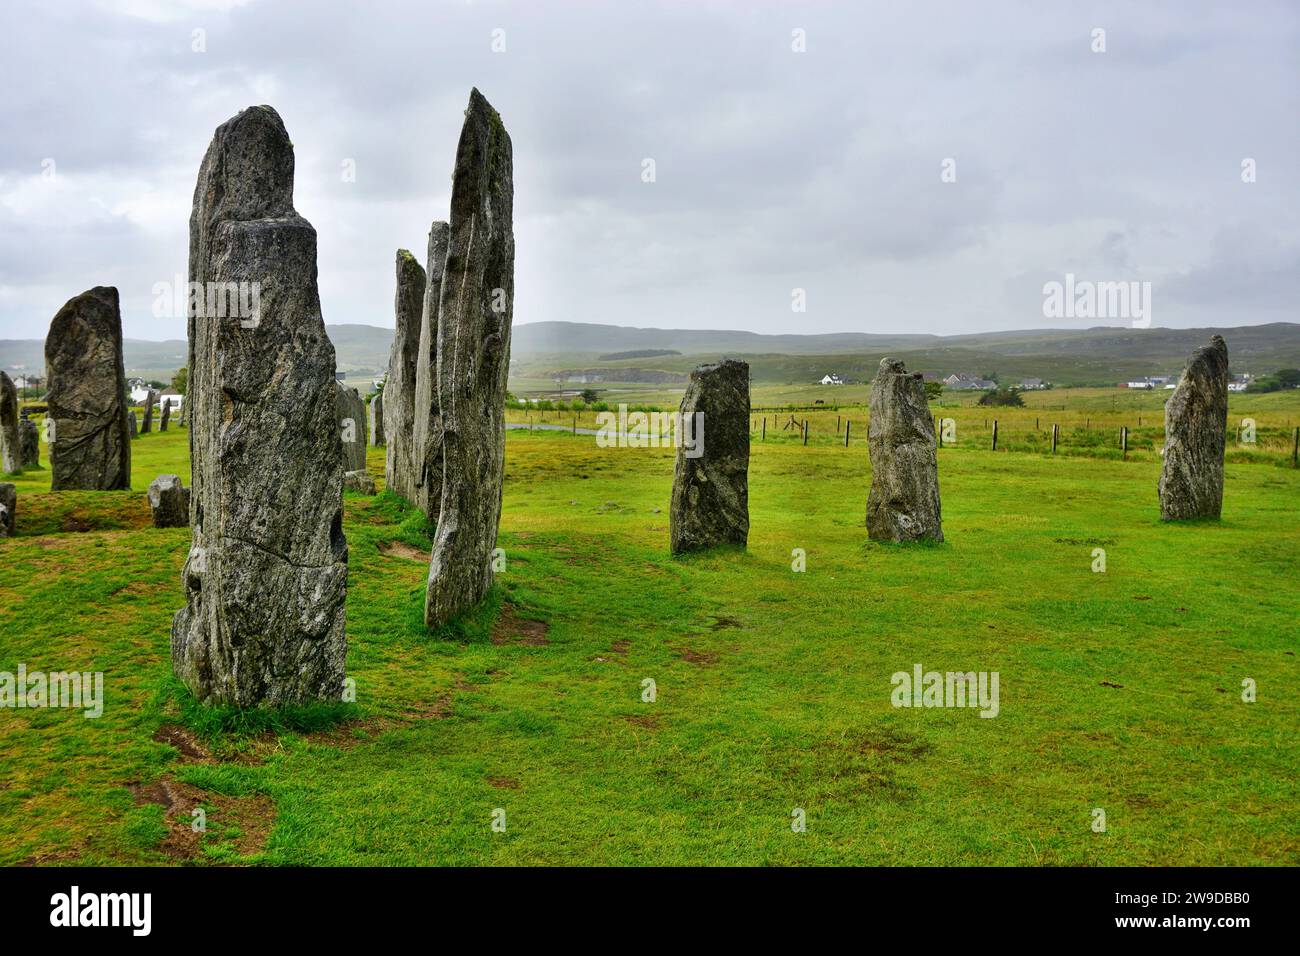 Misteriose pietre erette sull'isola di Lewis nelle Ebridi esterne, in Scozia. La monumentale disposizione neolitica attira visitatori da tutto il mondo Foto Stock